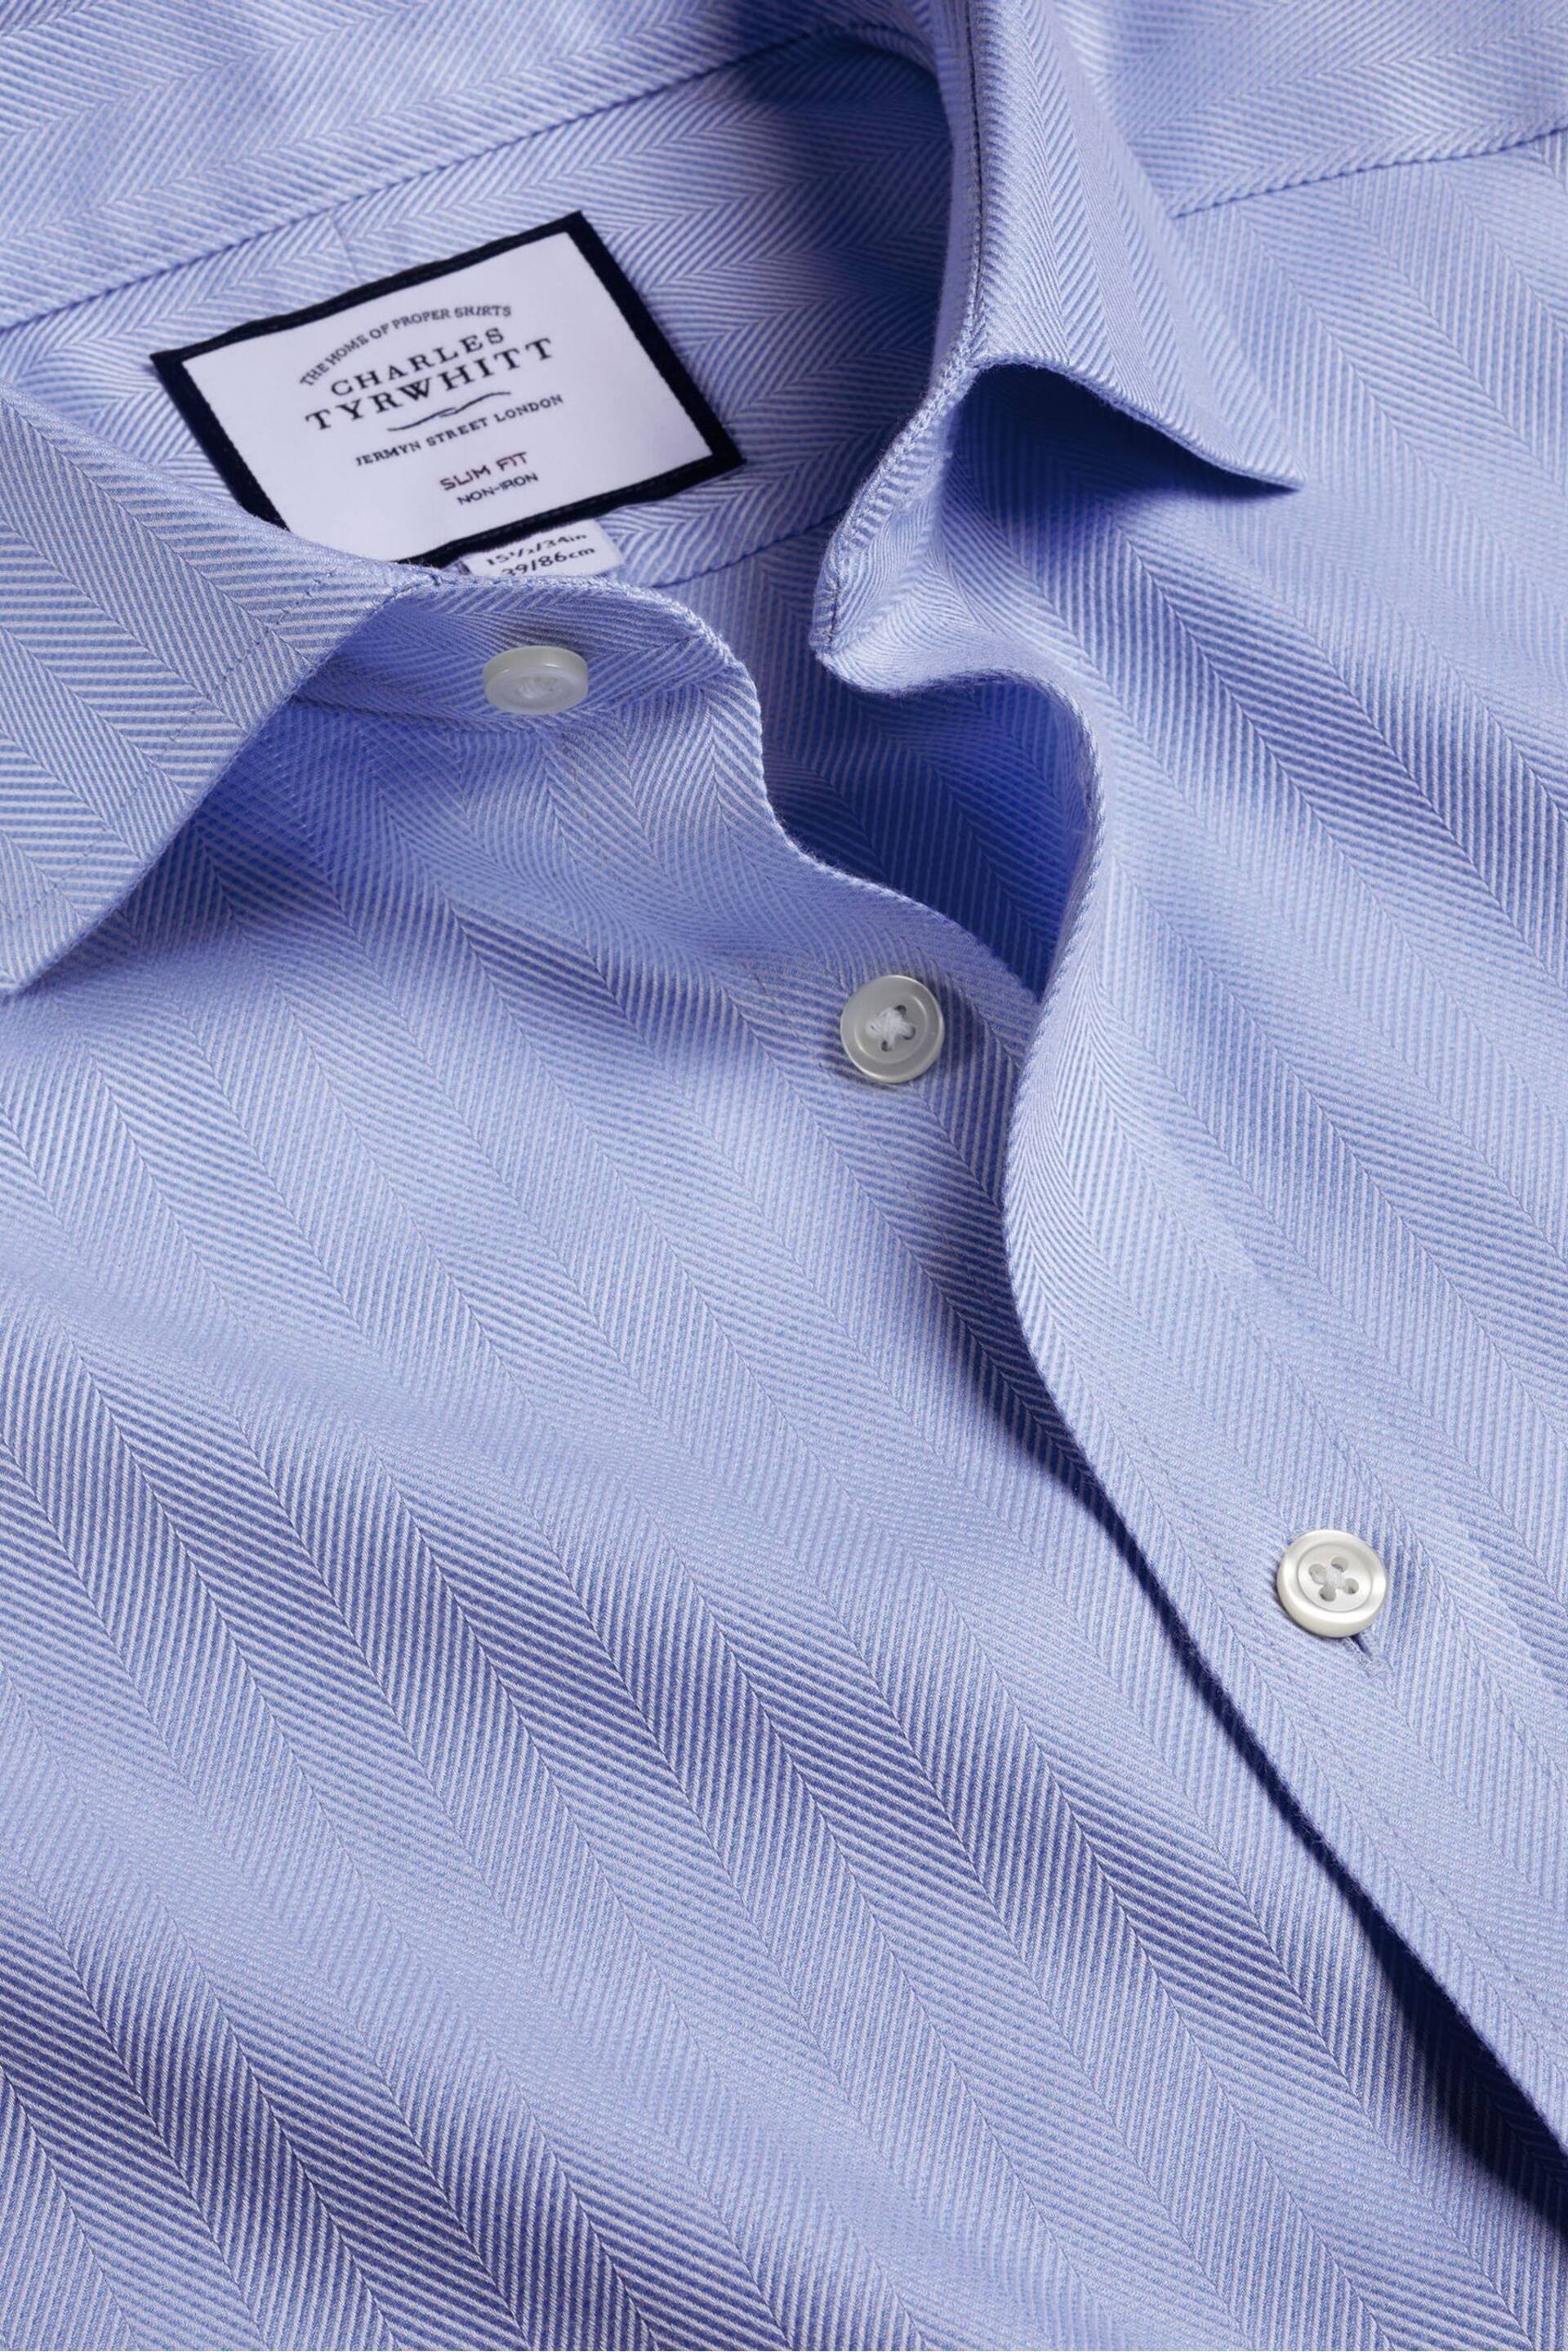 Charles Tyrwhitt Blue Slim Fit Cutaway Non-iron Herringbone Shirt - Image 4 of 4